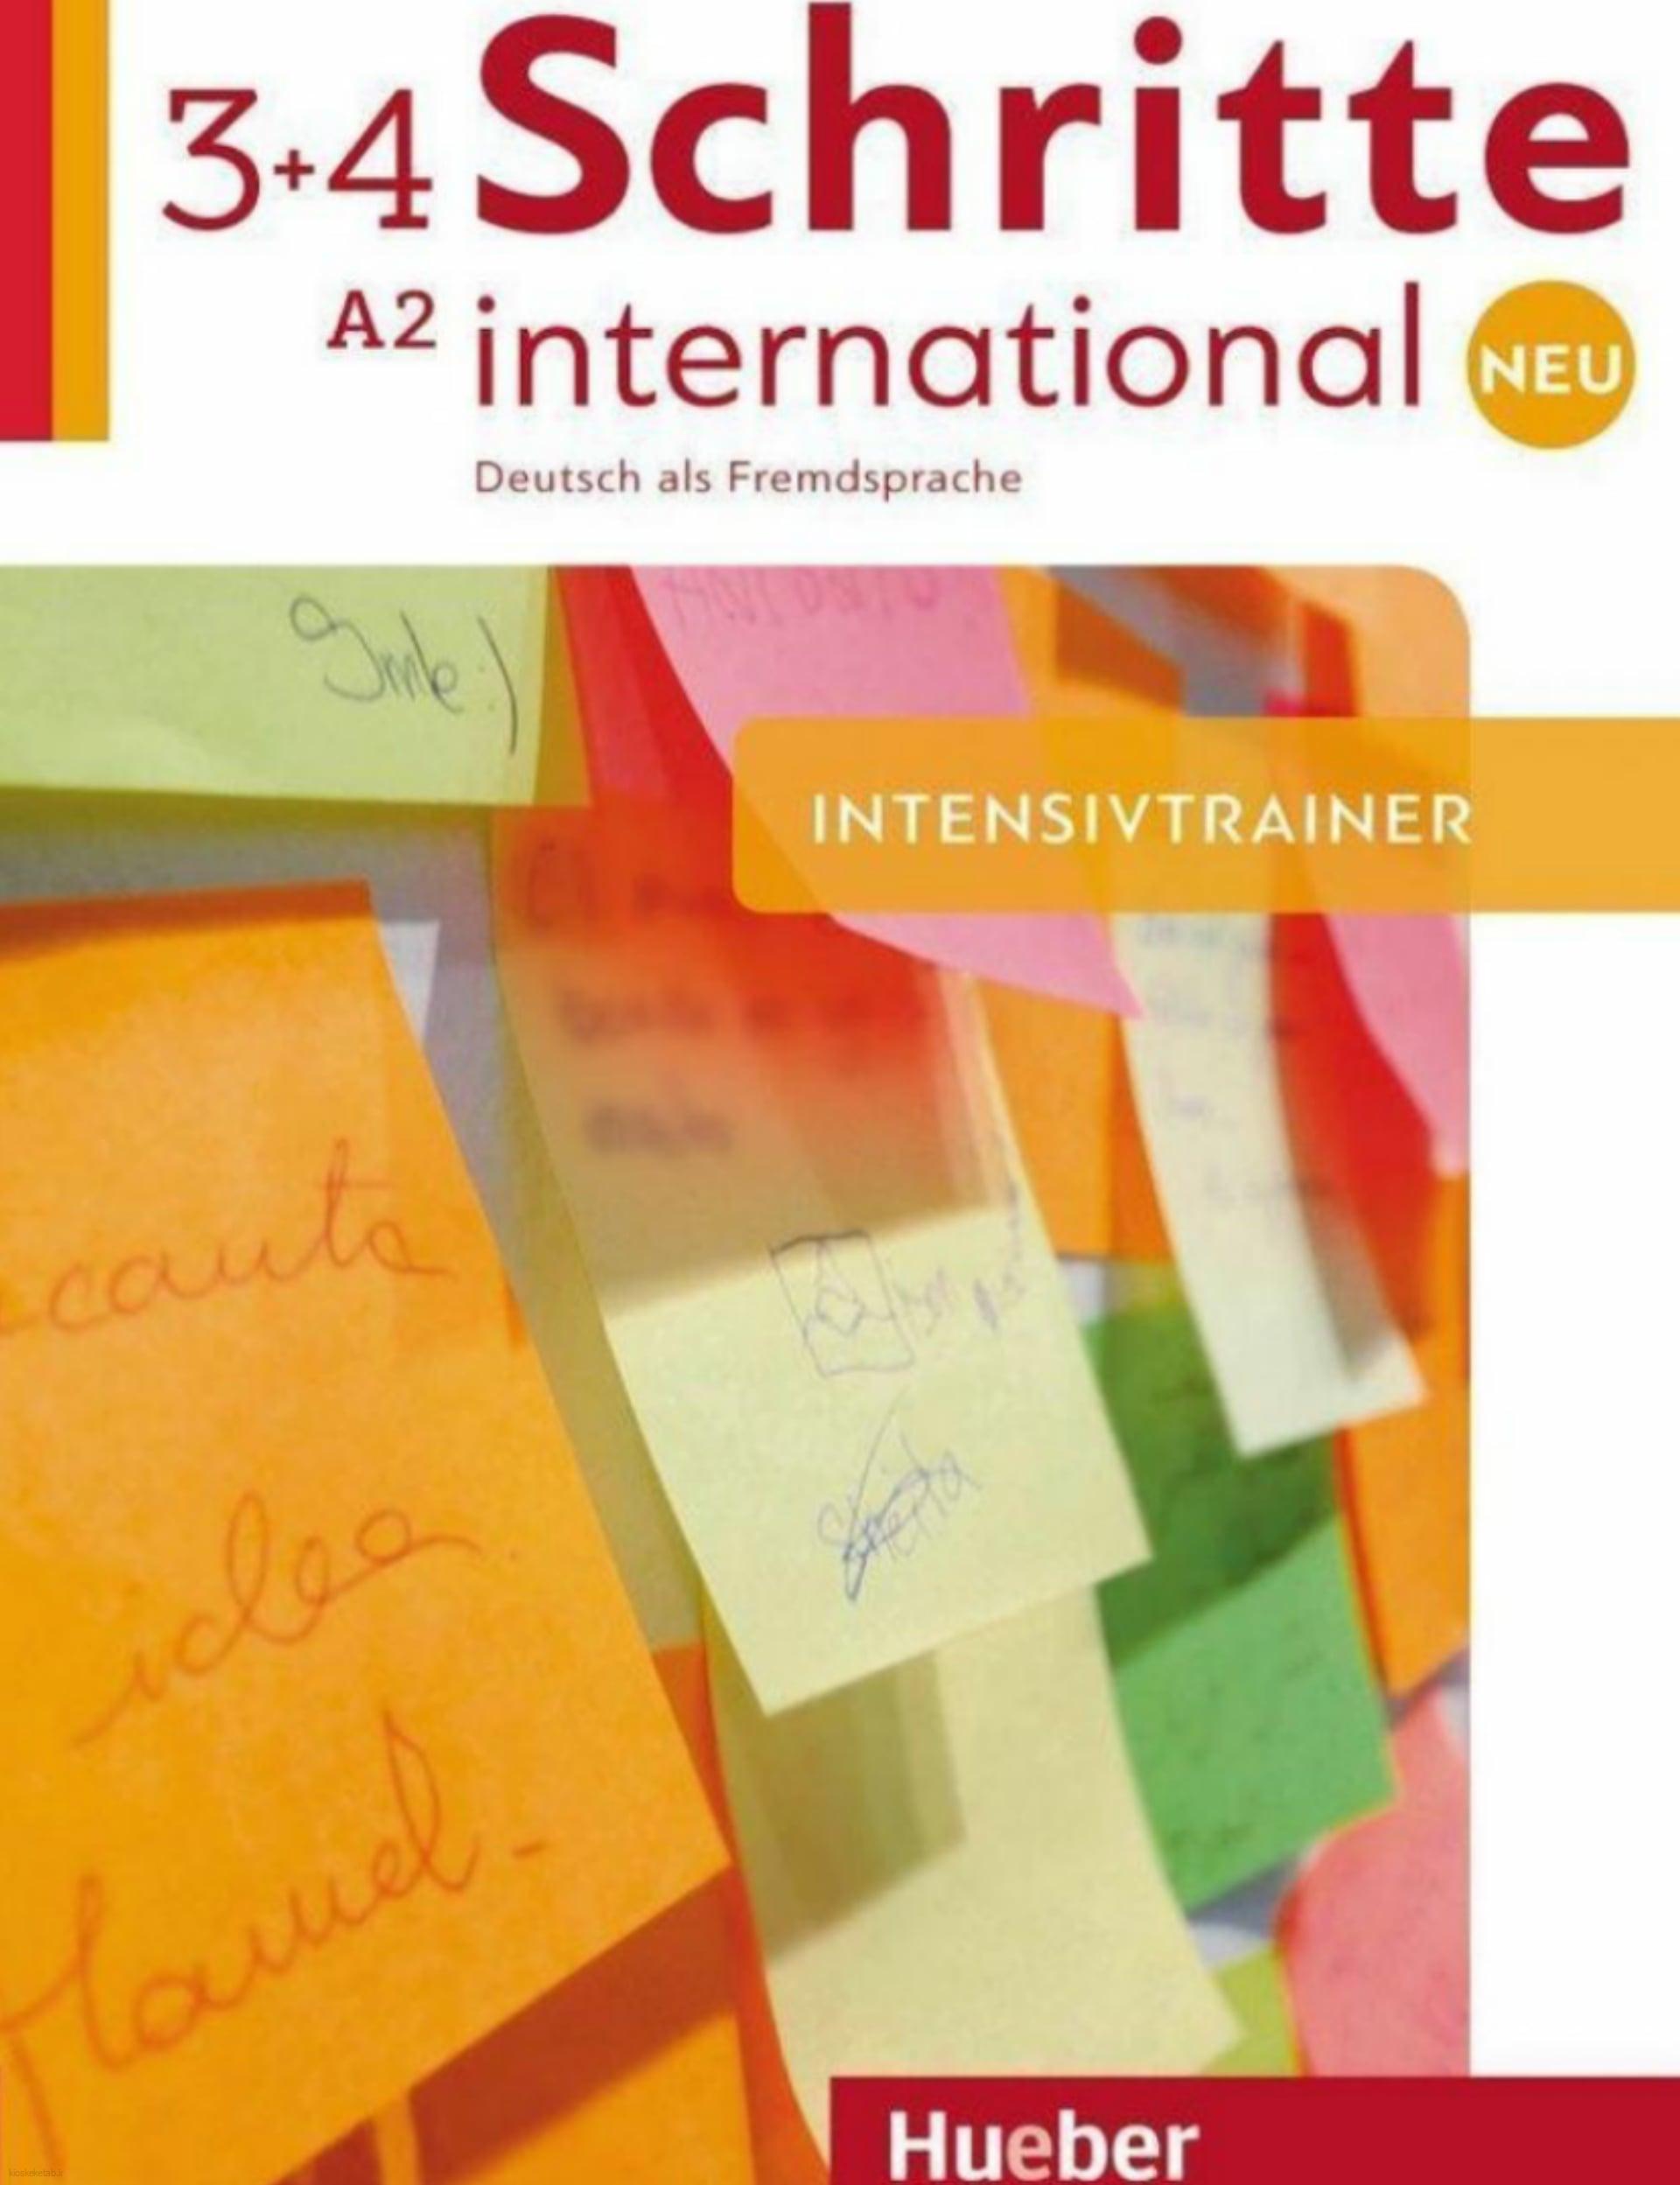 دانلود کتاب آلمانیschritte international neu 3+4 intensivtrainer